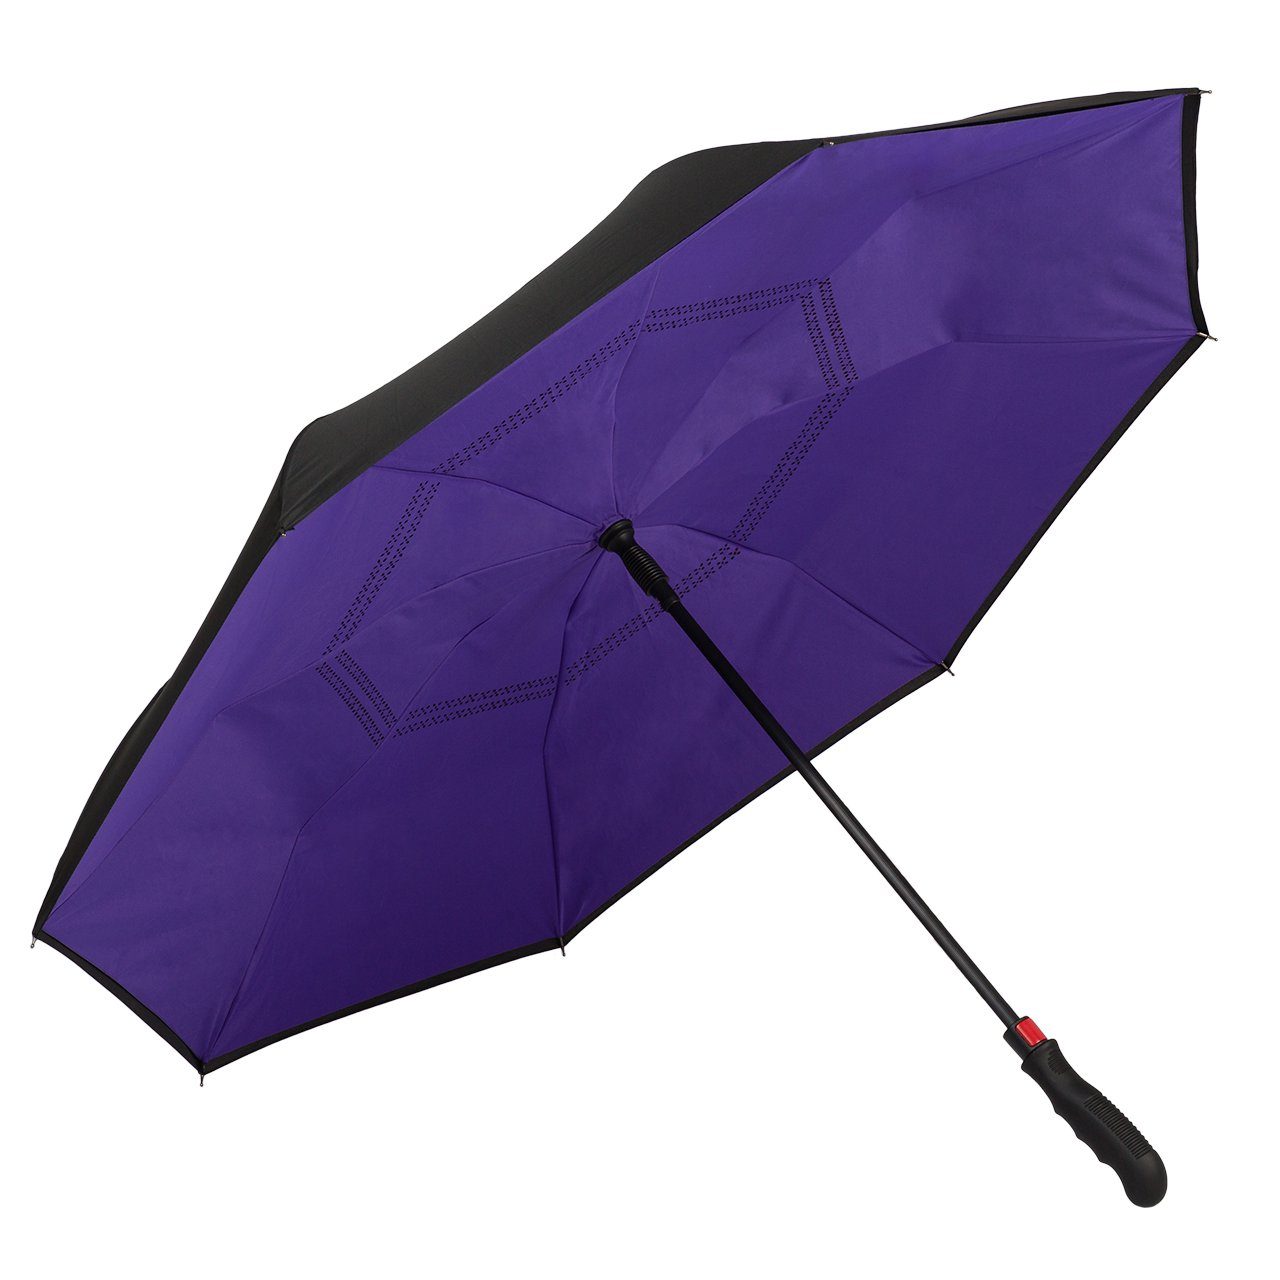 von Lilienfeld Stockregenschirm VON LILIENFELD Innovativer Regenschirm, Umgekehrte Öffnung, Selbst Stehend, Automatik, Doppelt bespannt, Sehr Stabil, Ergonomischer Griff, Remy, Die nasse Seite wird nach innen geklappt violett